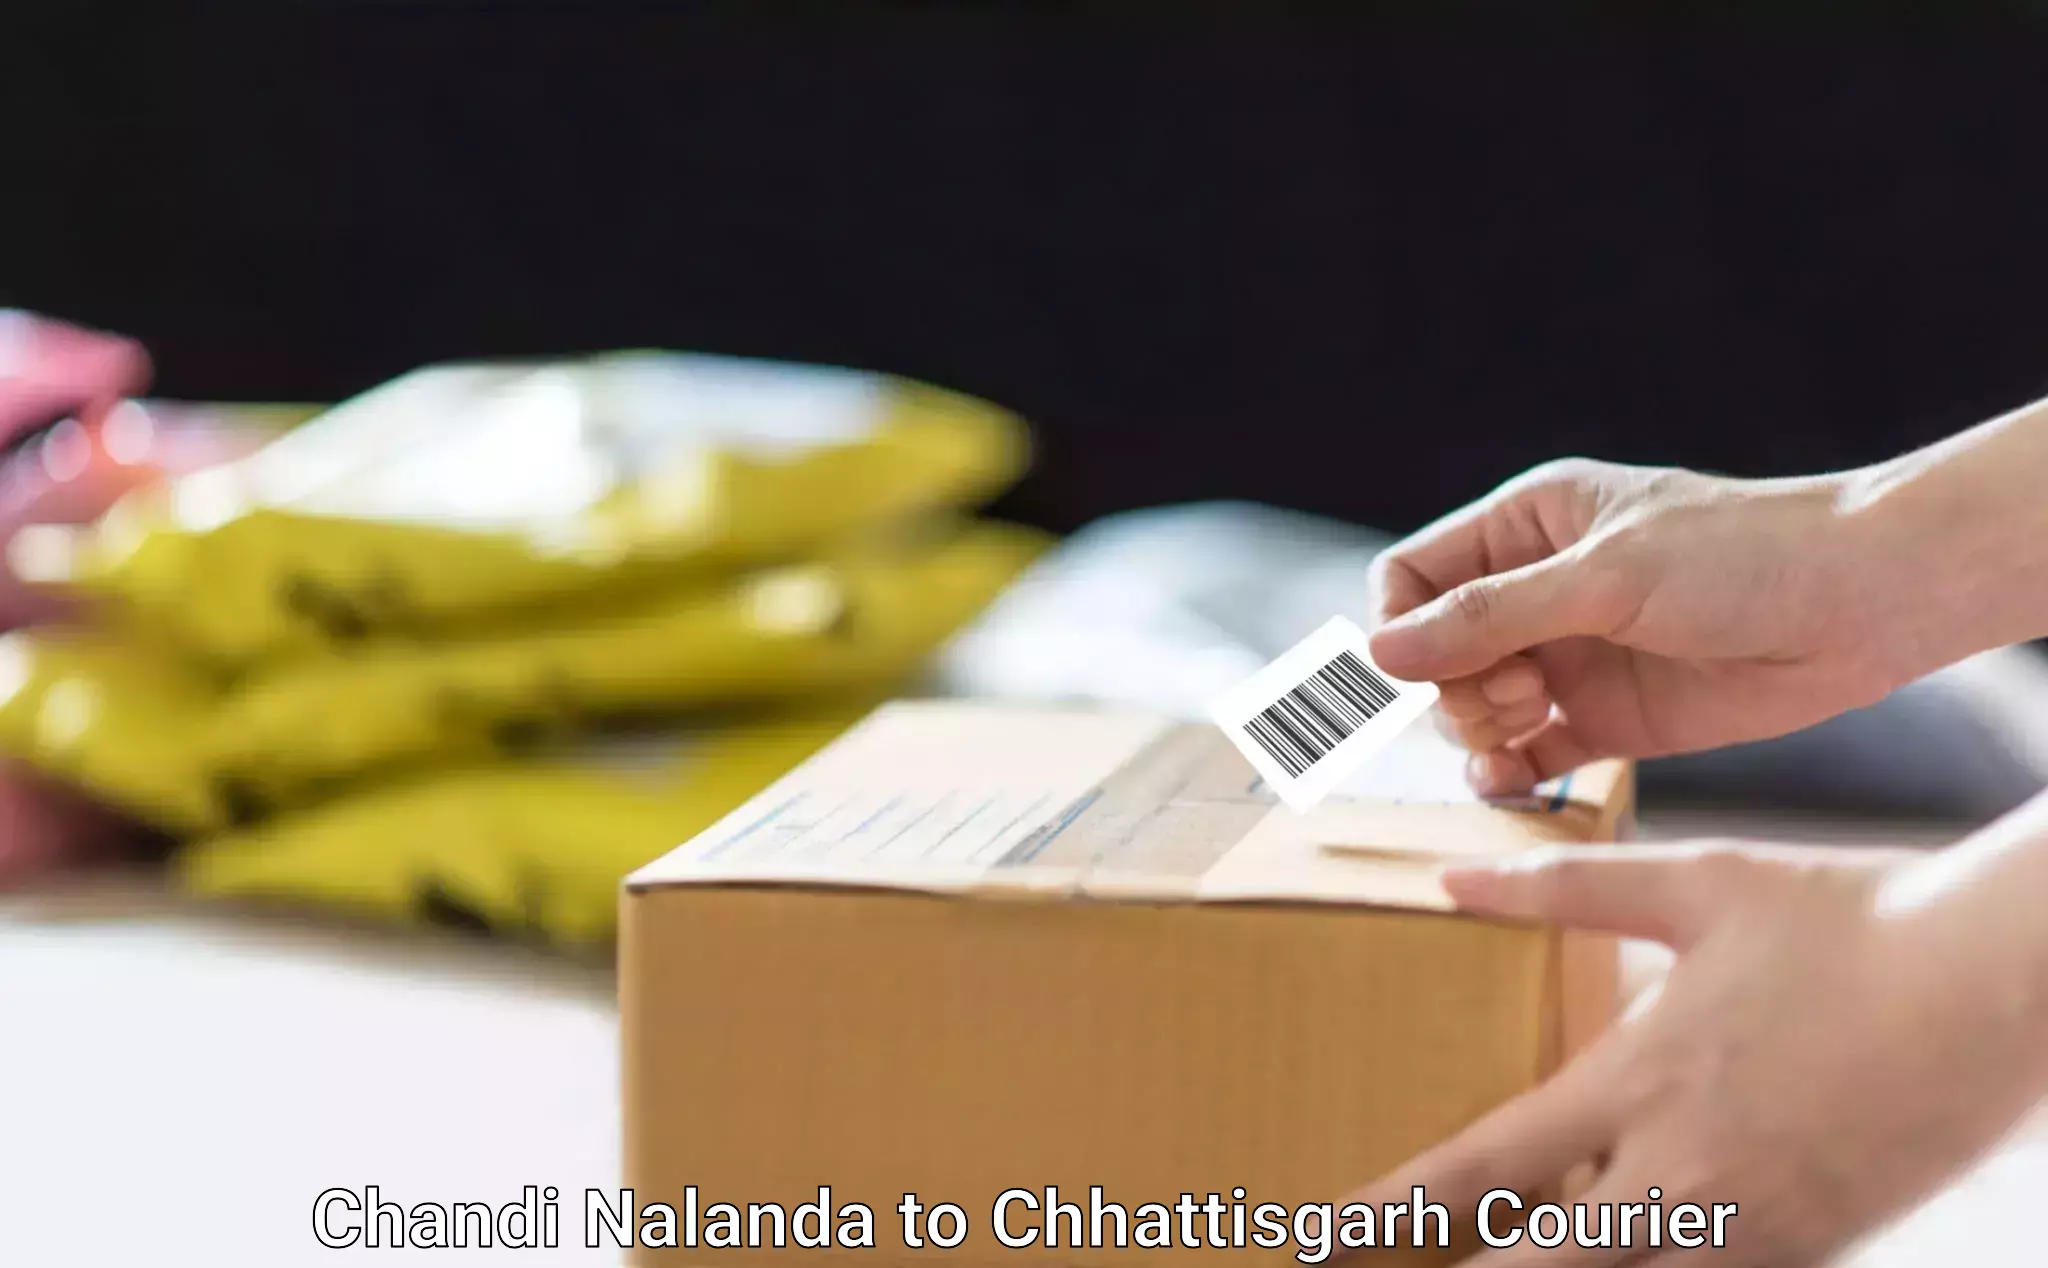 Professional furniture movers Chandi Nalanda to Manendragarh